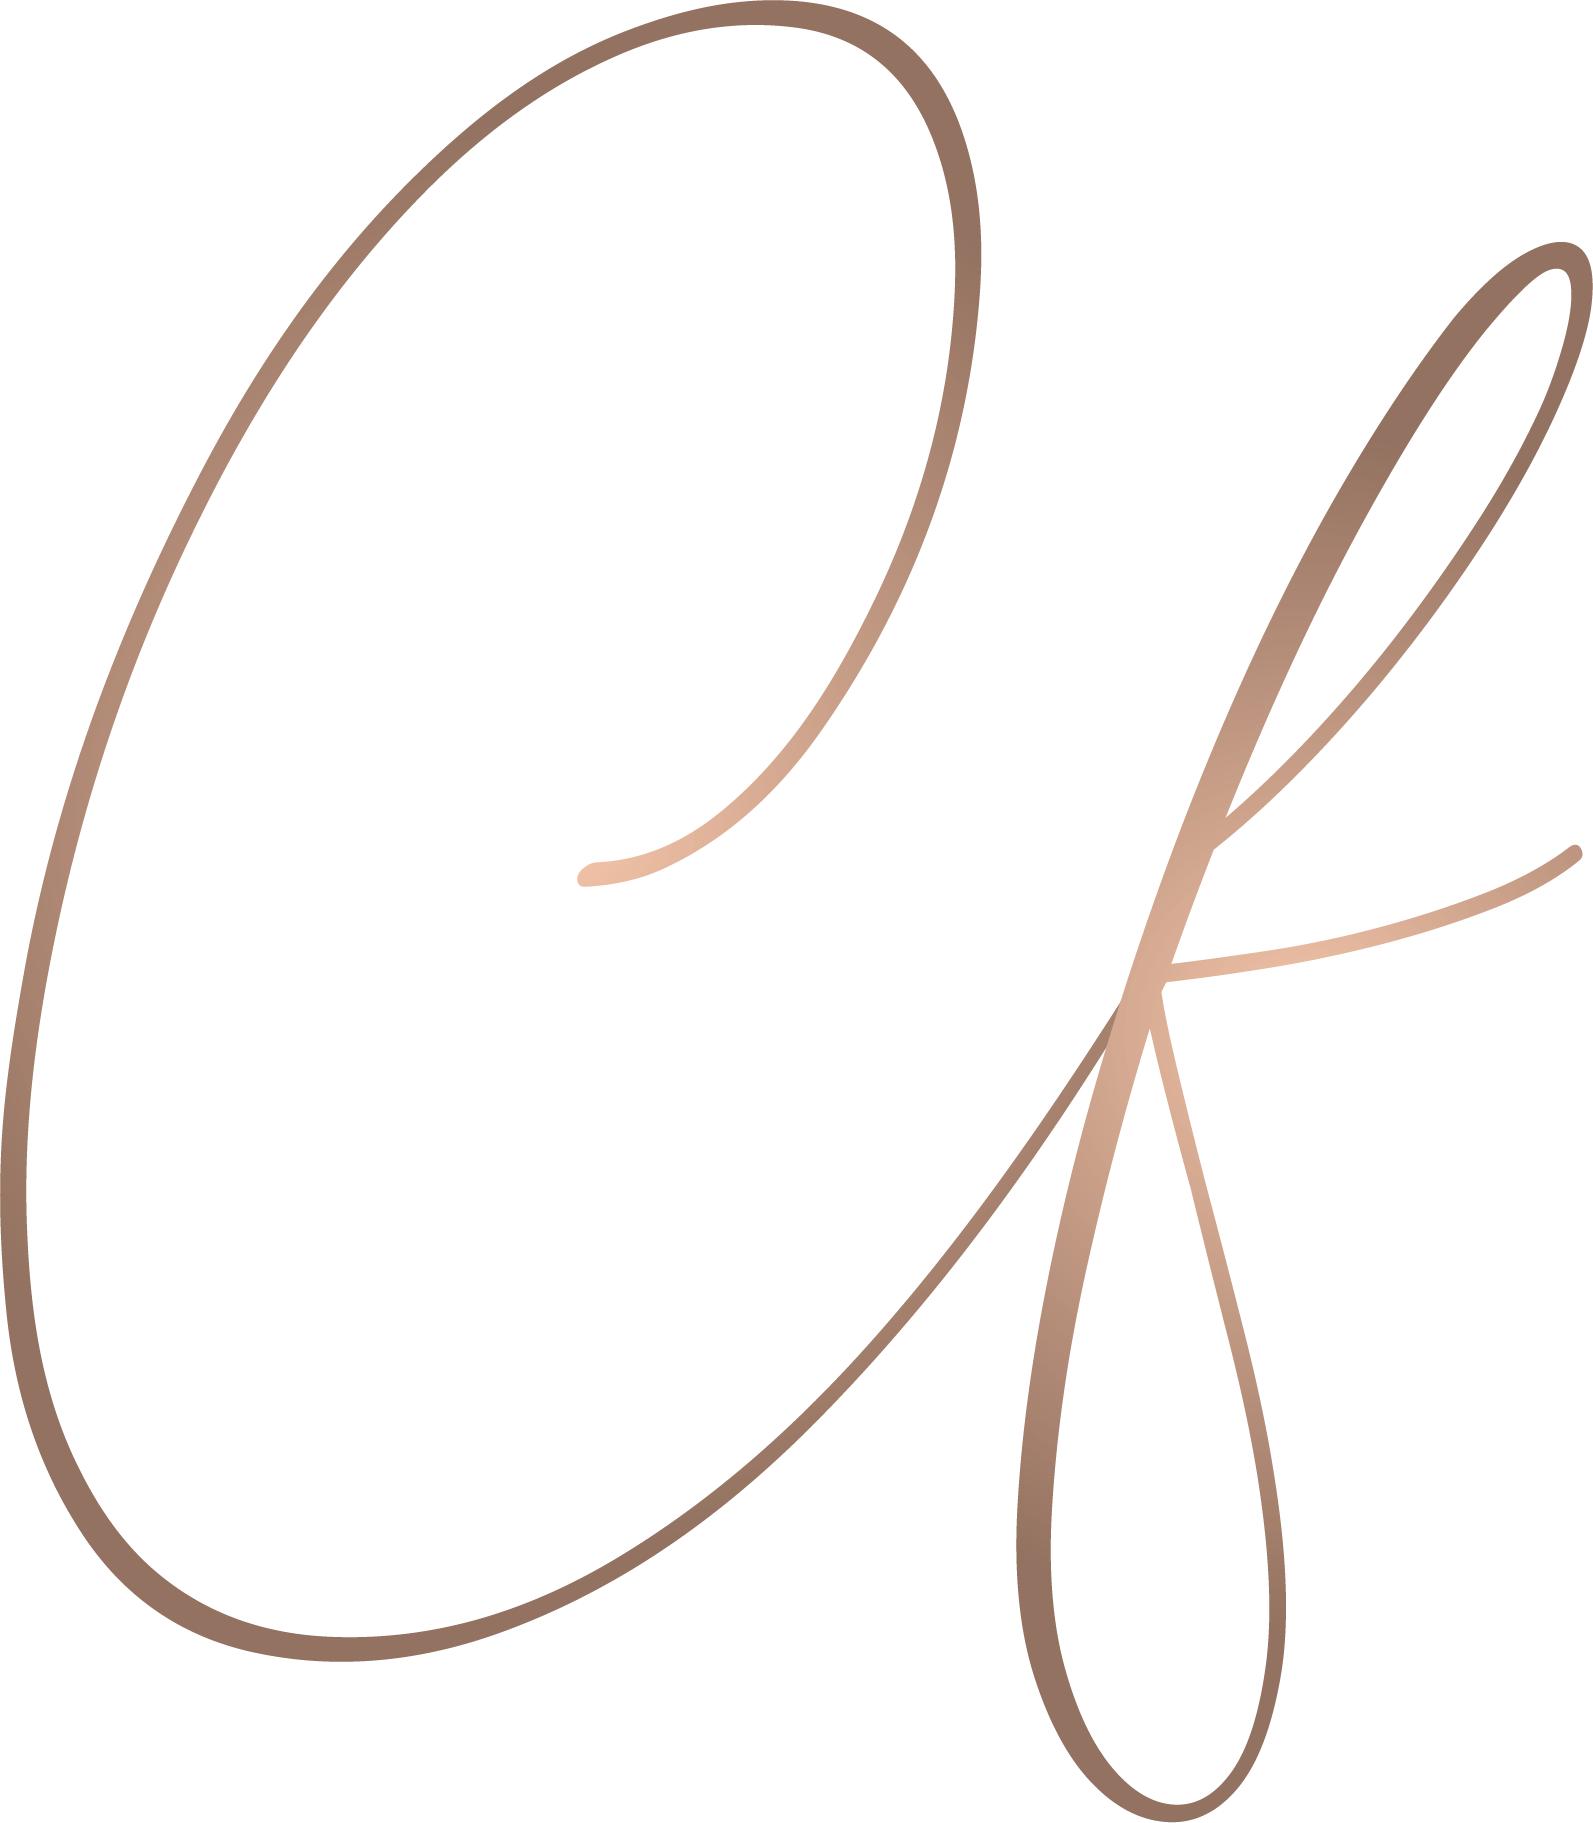 CF-Logo